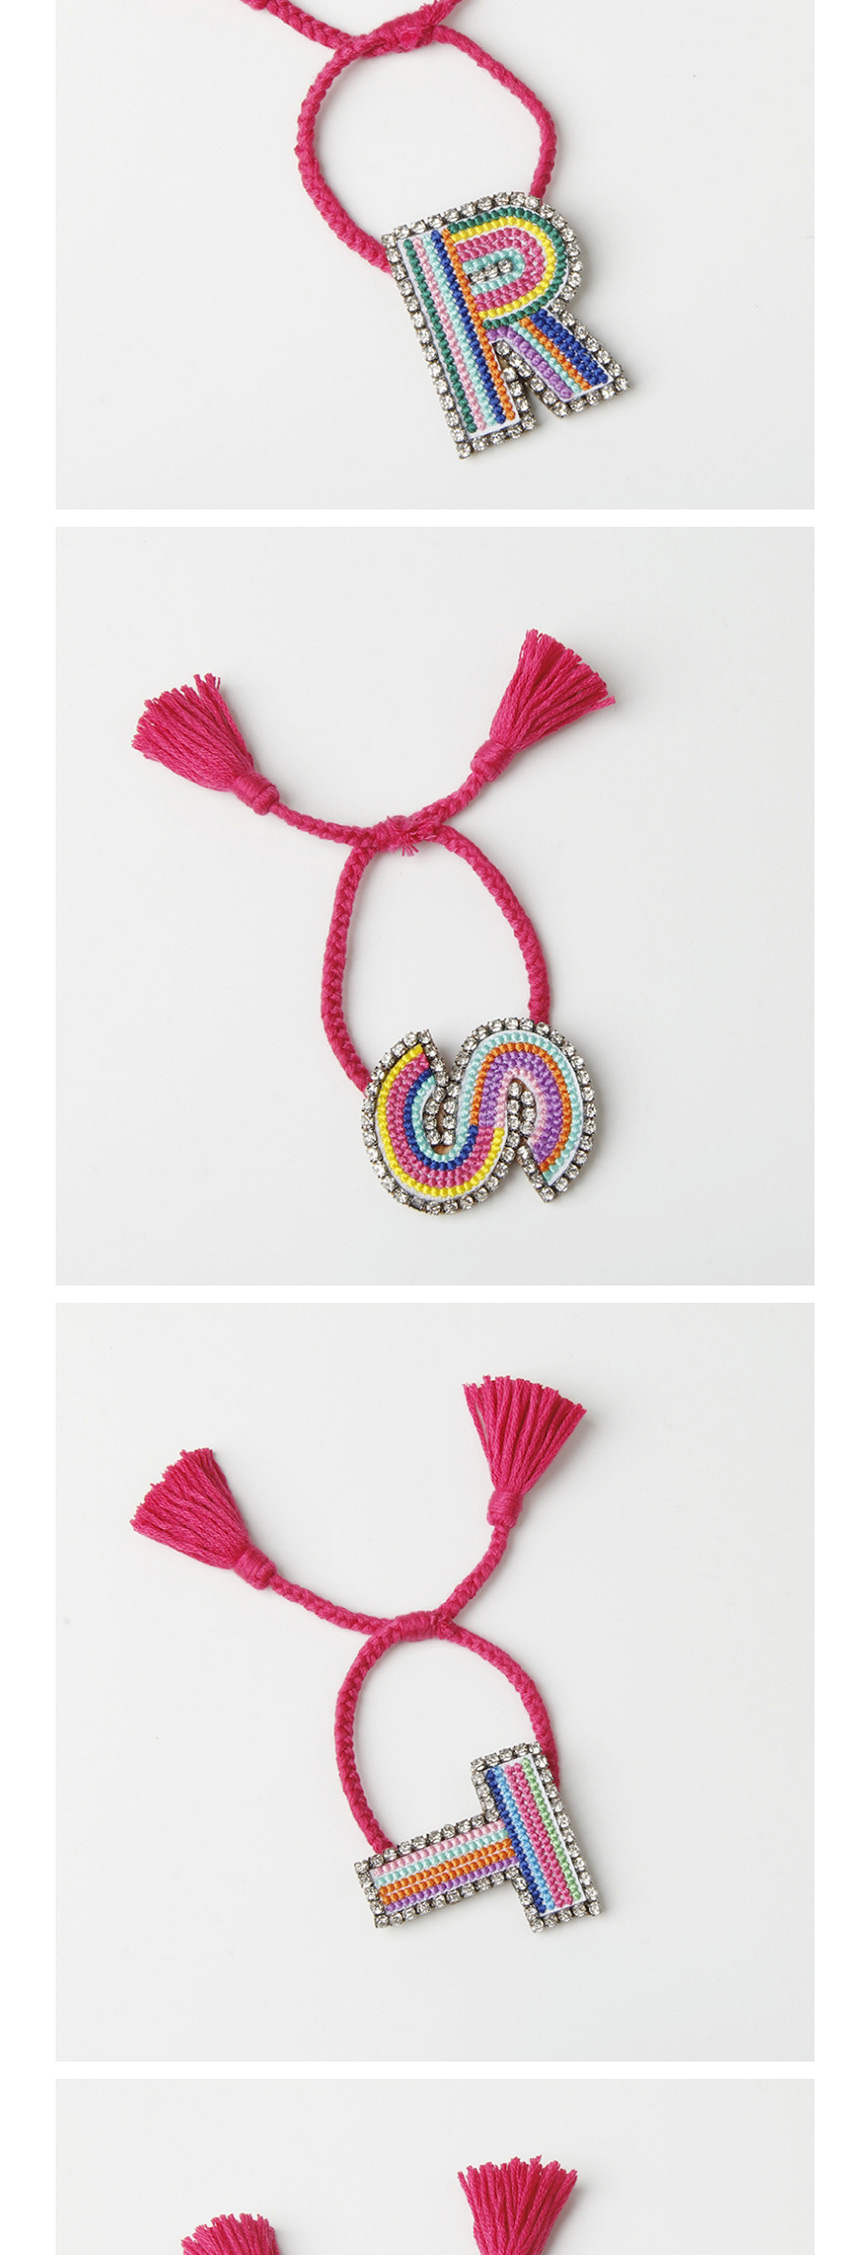 Fashion I Color Embroidered Woven Adjustable Crystal Alphabet Bracelet,Fashion Bracelets